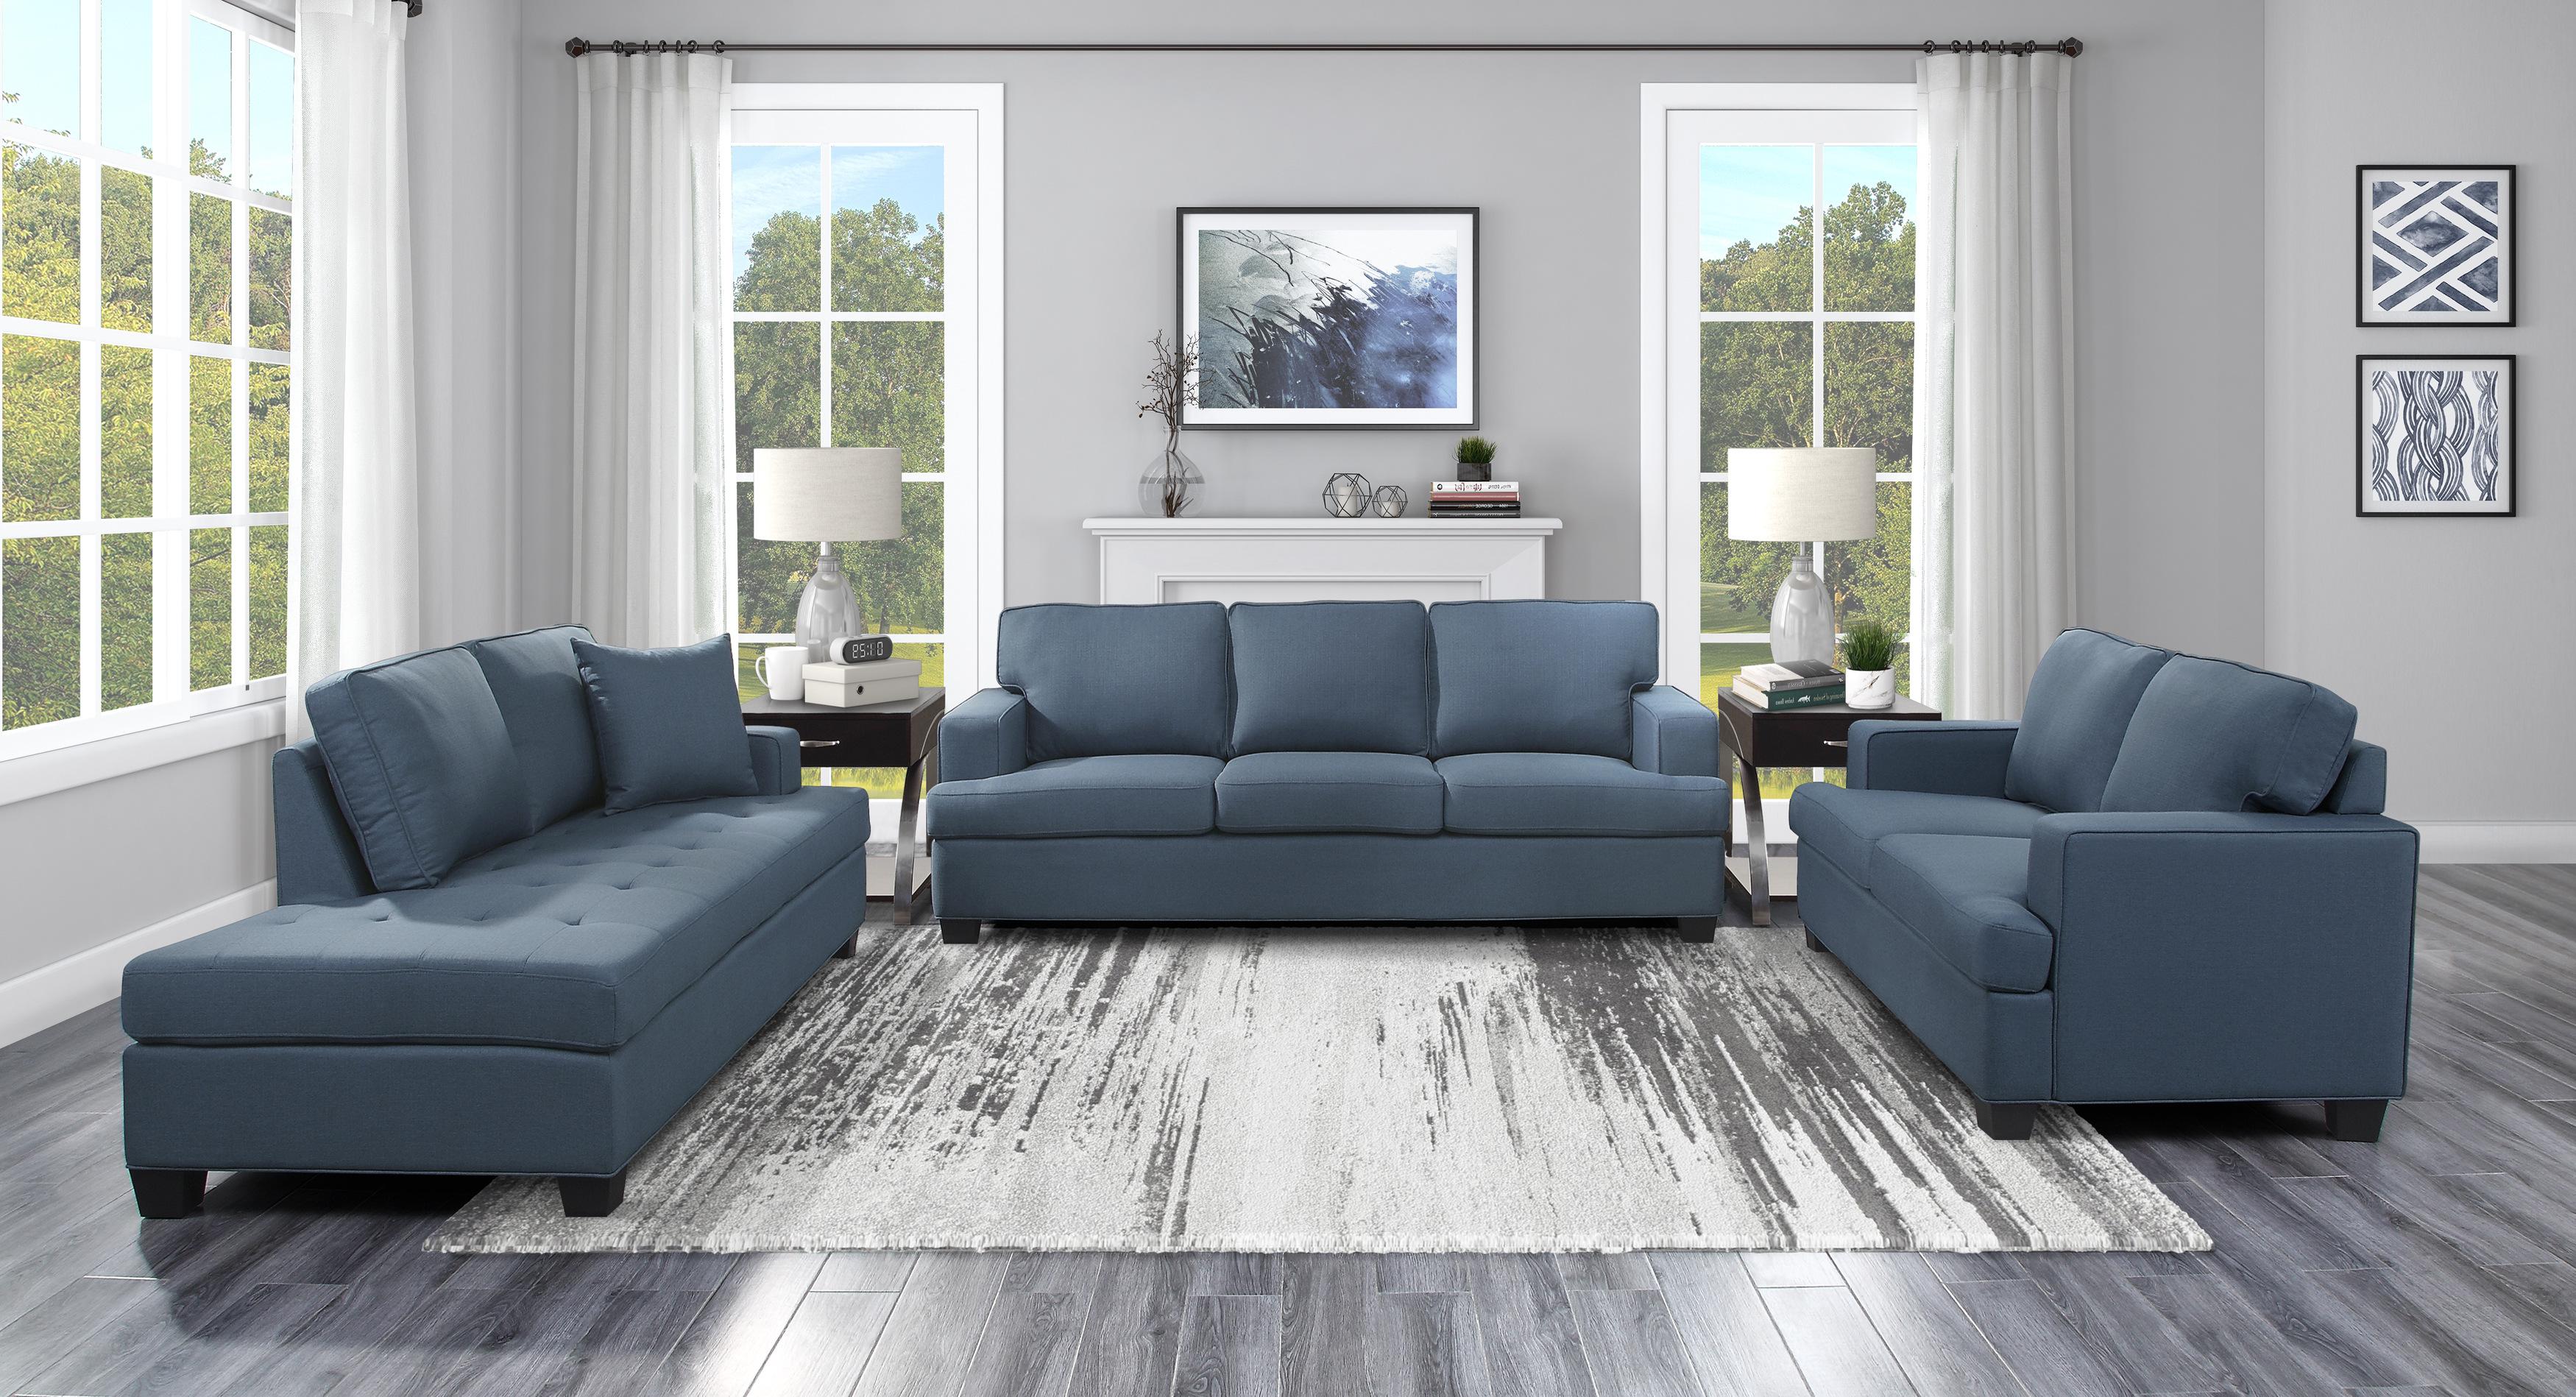 

    
Transitional Blue Solid Wood Living Room Set 3pcs Homelegance 9327BU Elmont
